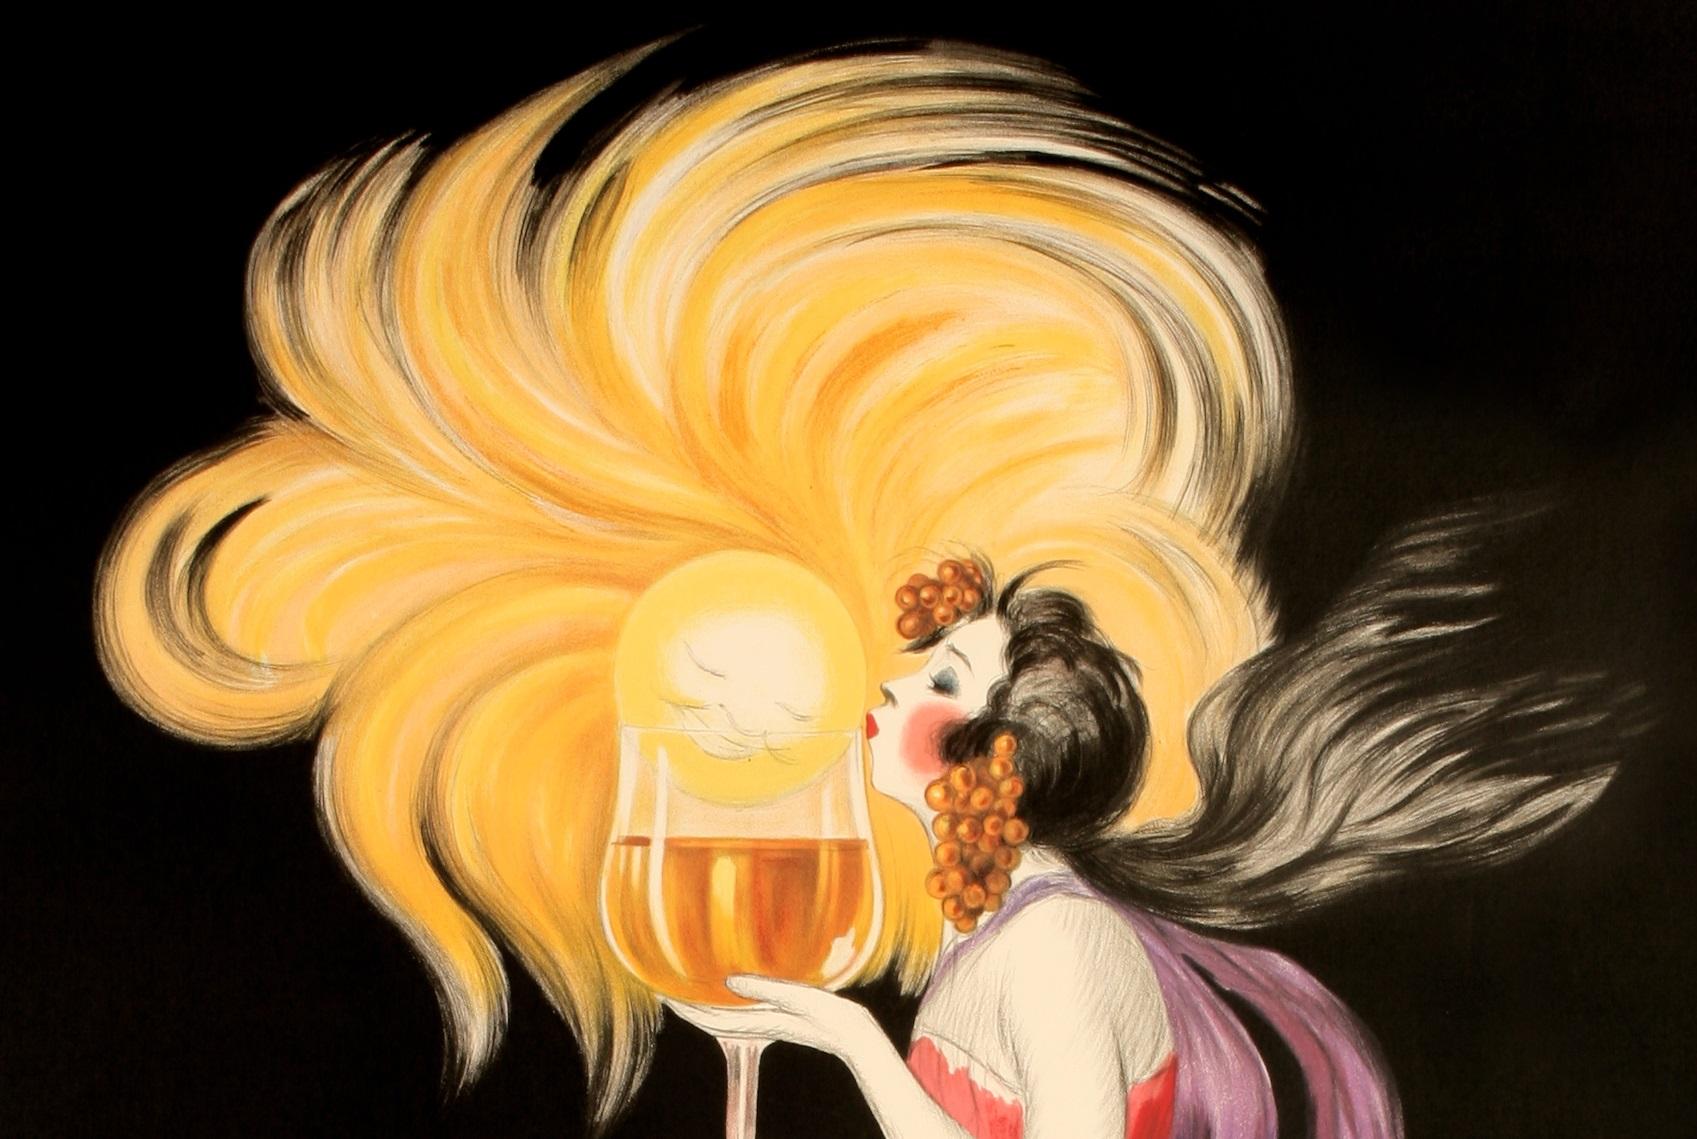 Original Vintage Alcohol Poster for Cognac Monnet dating from 1927 by Leonetto Cappiello.

Artist: Leonetto Cappiello (1875 - 1942) 
Title: ..Du soleil dans un verre.. Cognac Monnet
Date: 1927
Size: 52 x 78.7 in / 132 x 200 cm
Printer :  Les